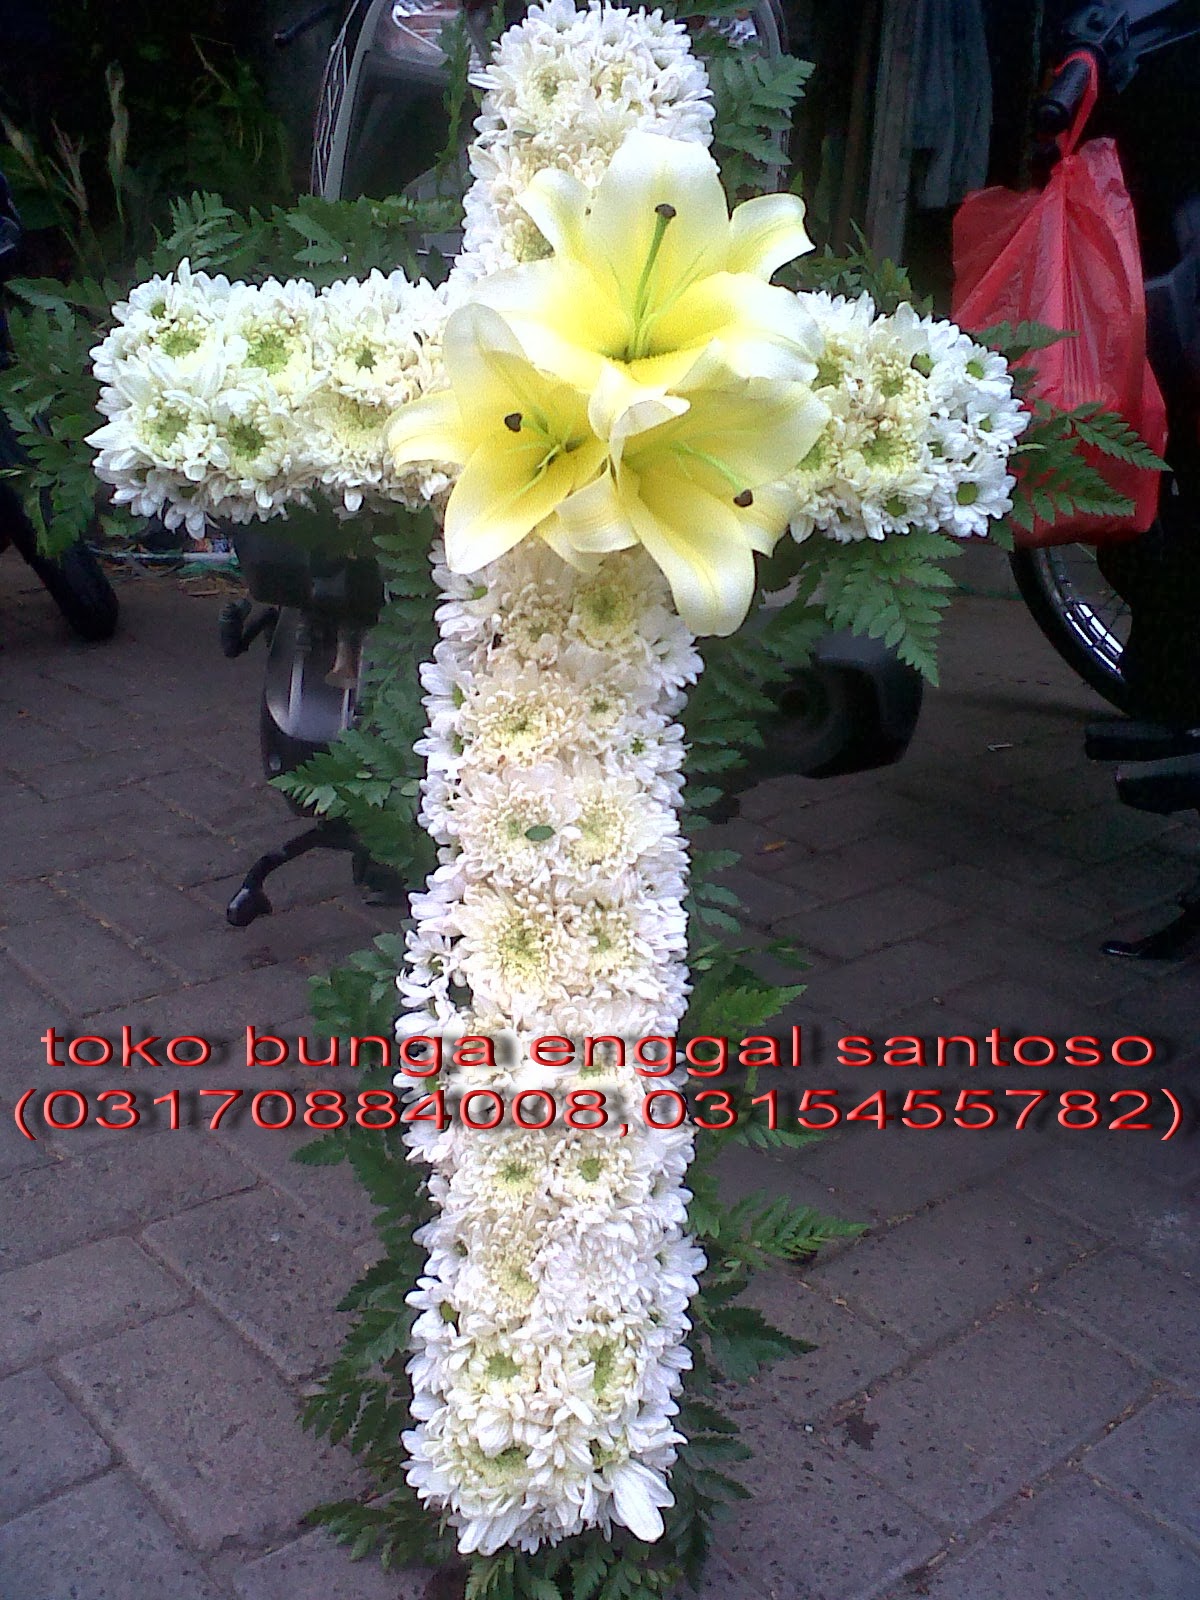 toko bunga sidoarjo 085733331108: rangkaian bunga gereja ...